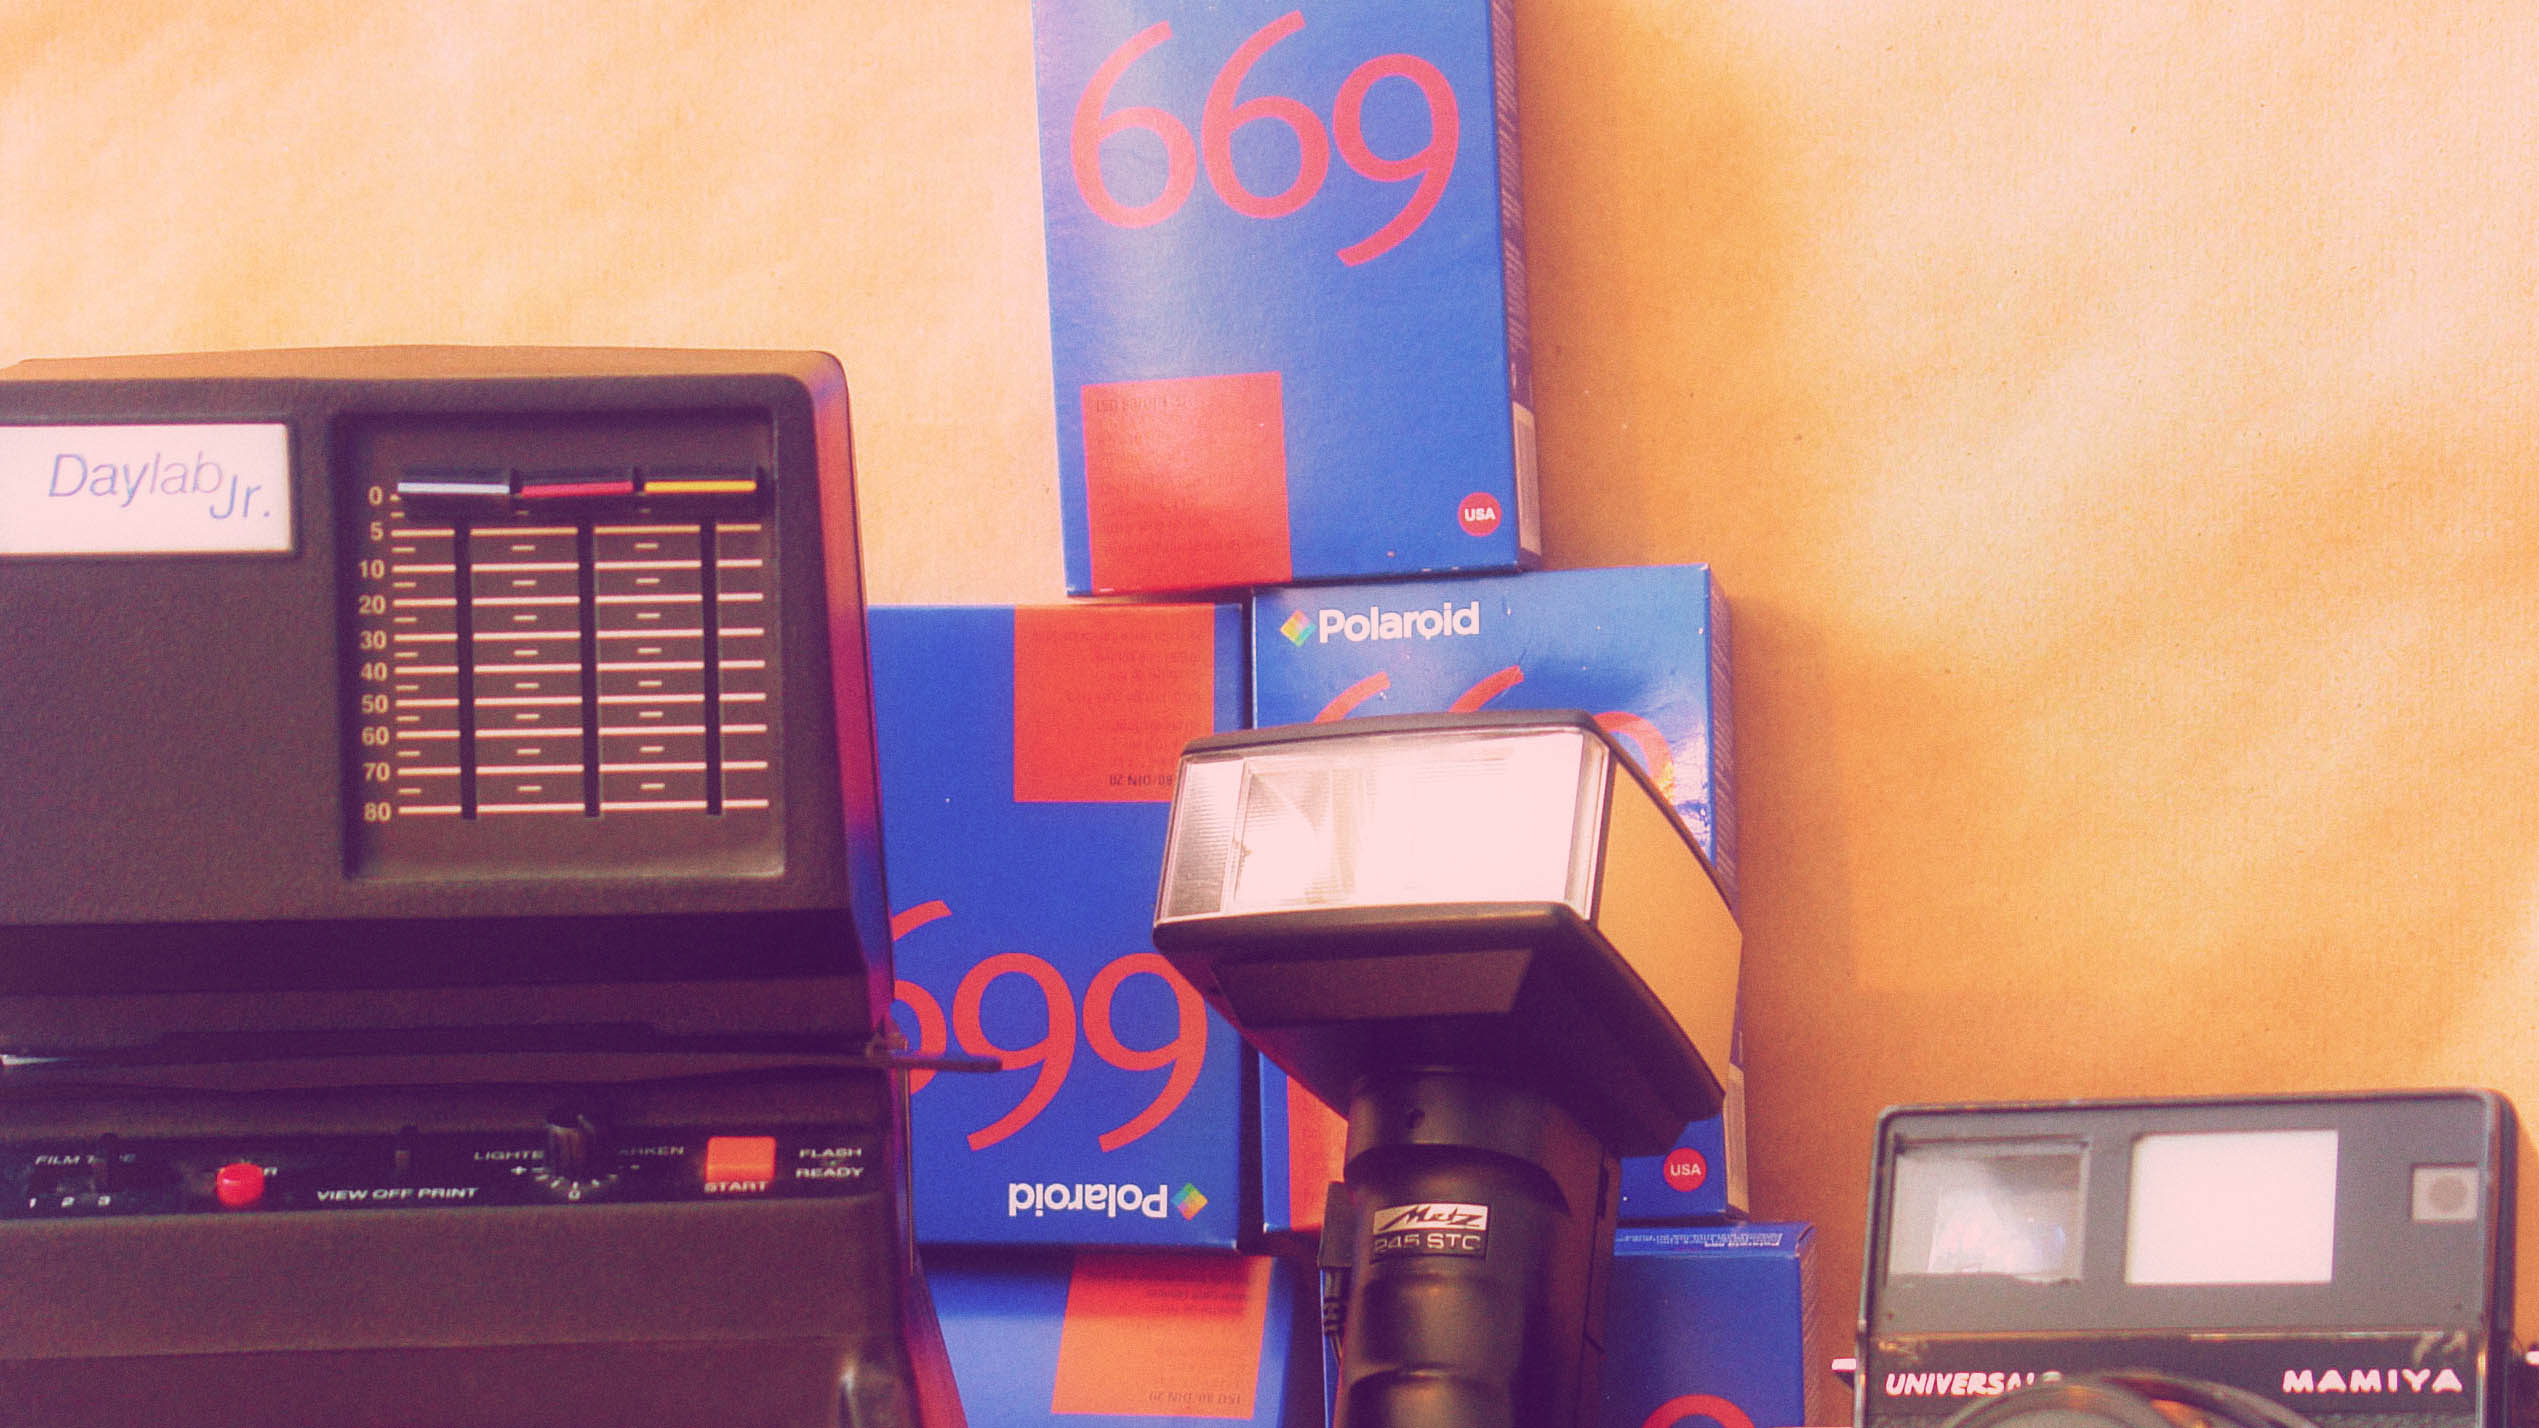 polaroid kamera und polaroid 669 filme